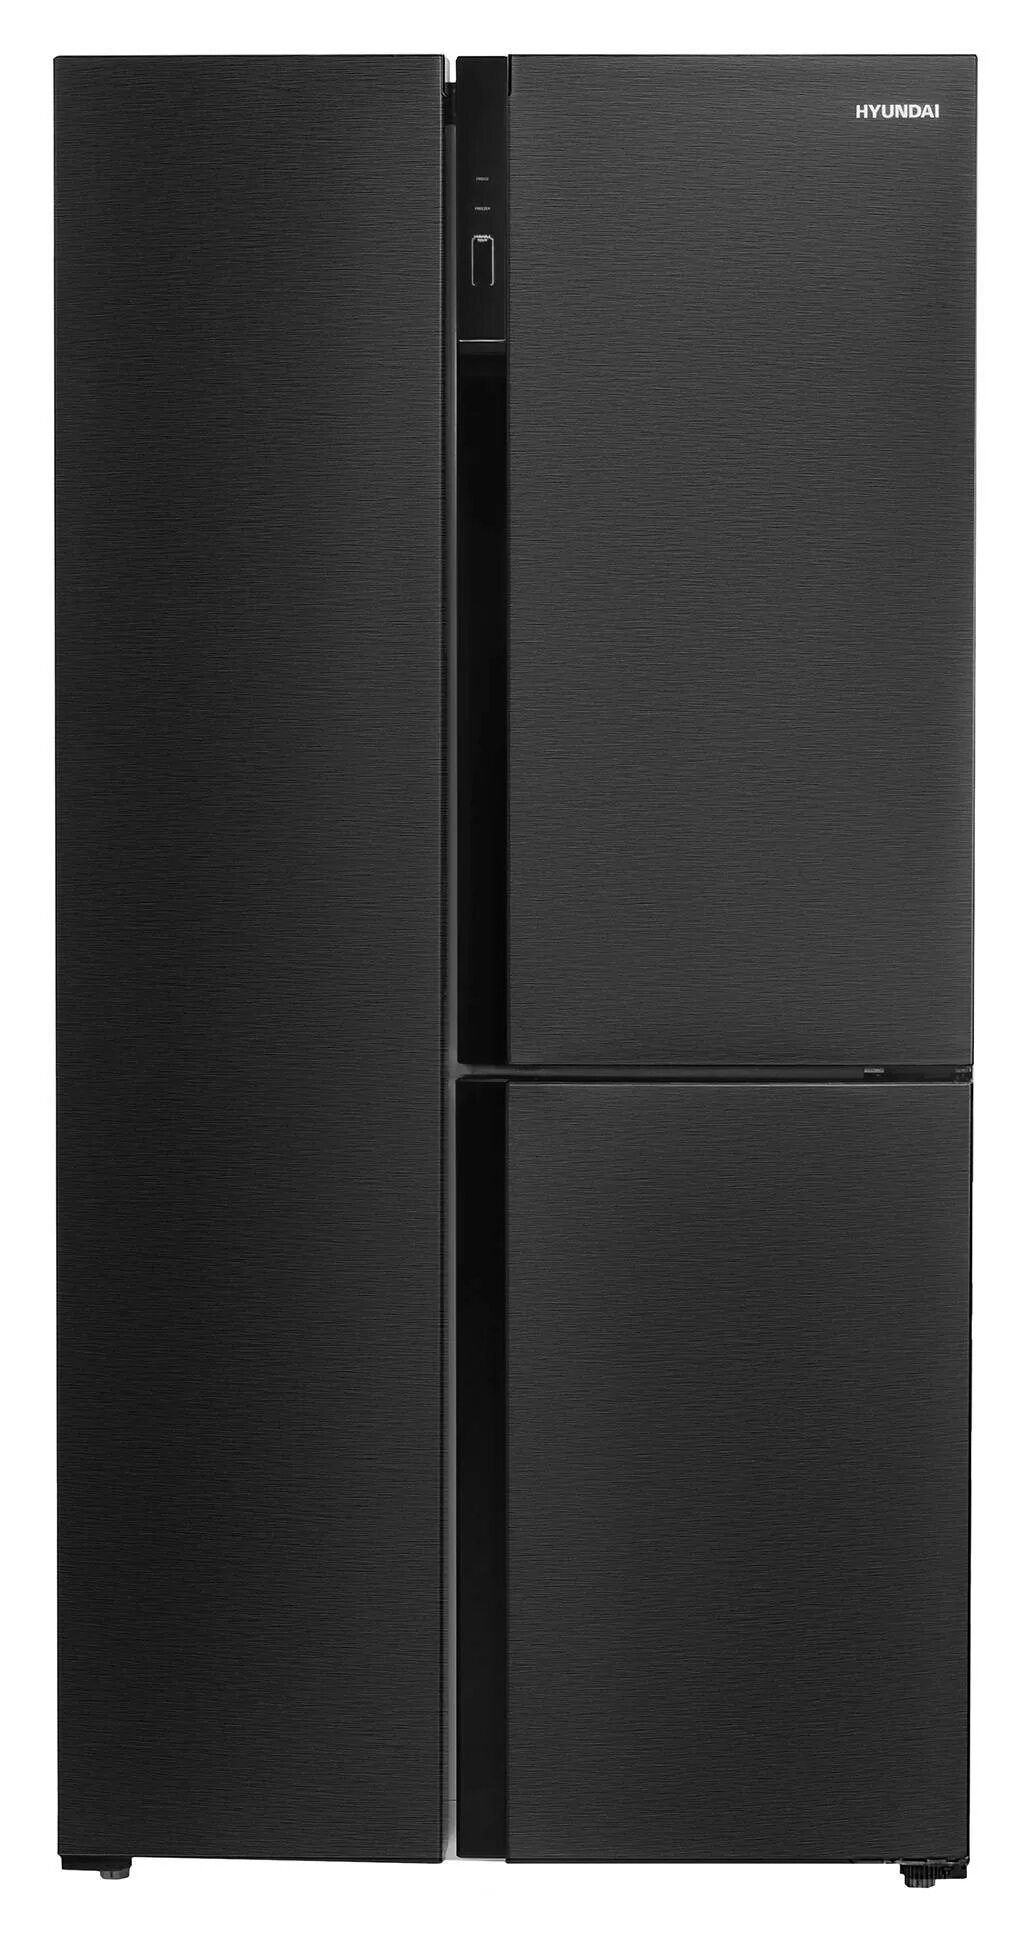 Холодильник Hyundai cs5073fv, графит. Холодильник Side by Side Hyundai cs5073fv черная сталь. Холодильник Hyundai cs5073fv черный (трехкамерный). Многокамерный холодильник Hyundai cs5073fv графит.